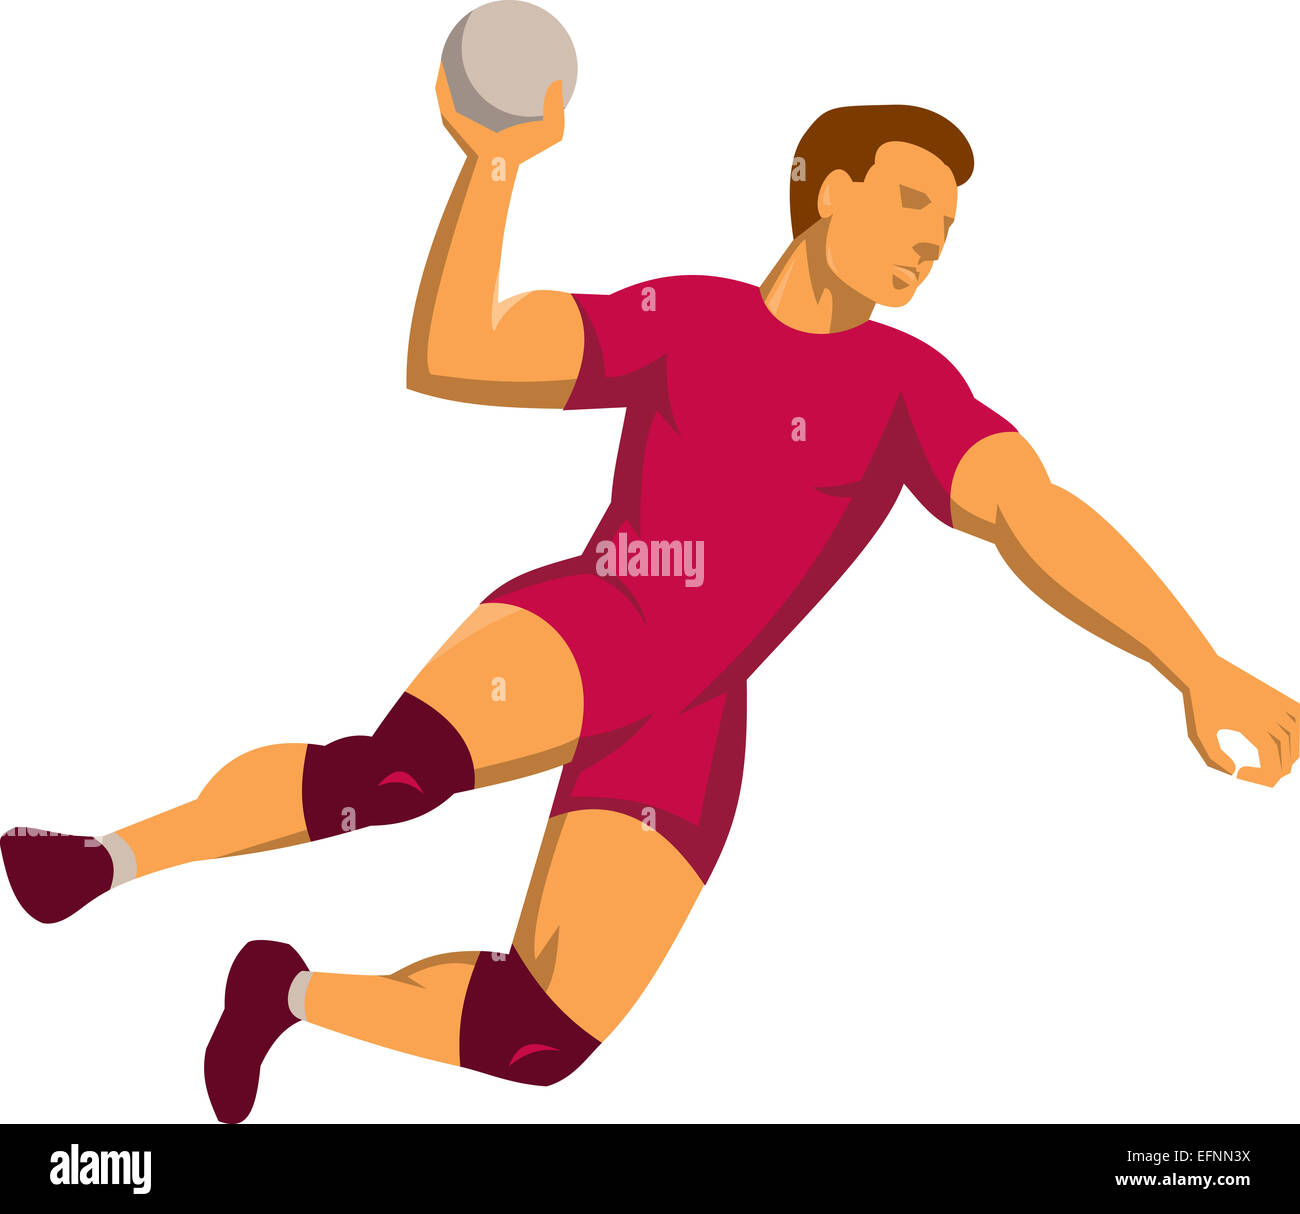 Illustrazione di una palla a mano il giocatore con la palla jumping gettando rigature impostato su isolato sfondo bianco fatto in stile retrò. Foto Stock